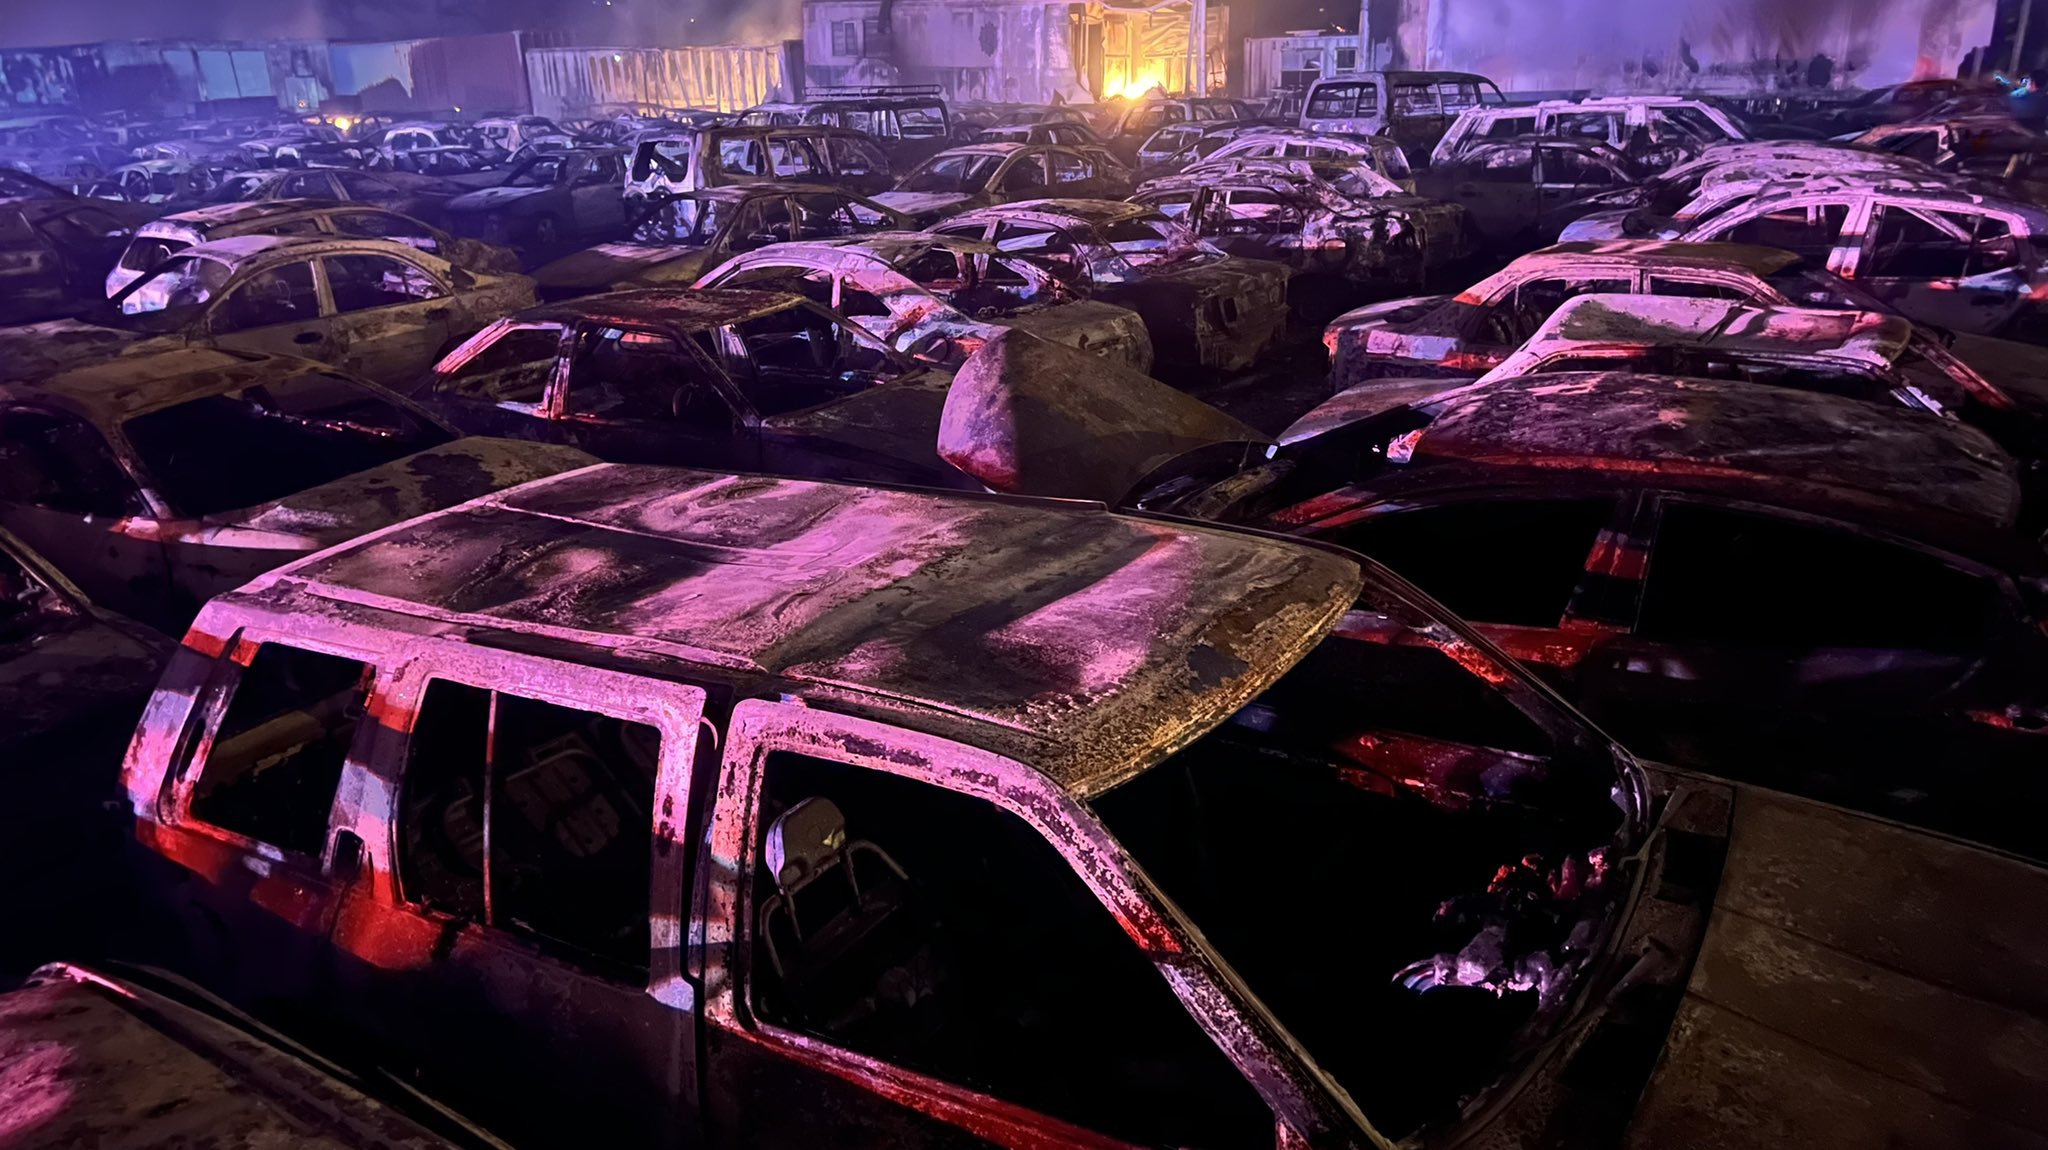 Decenas de vehículos quedaron calcinados tras el incendio. (Foto Prensa Libre: Henry Montenegro)